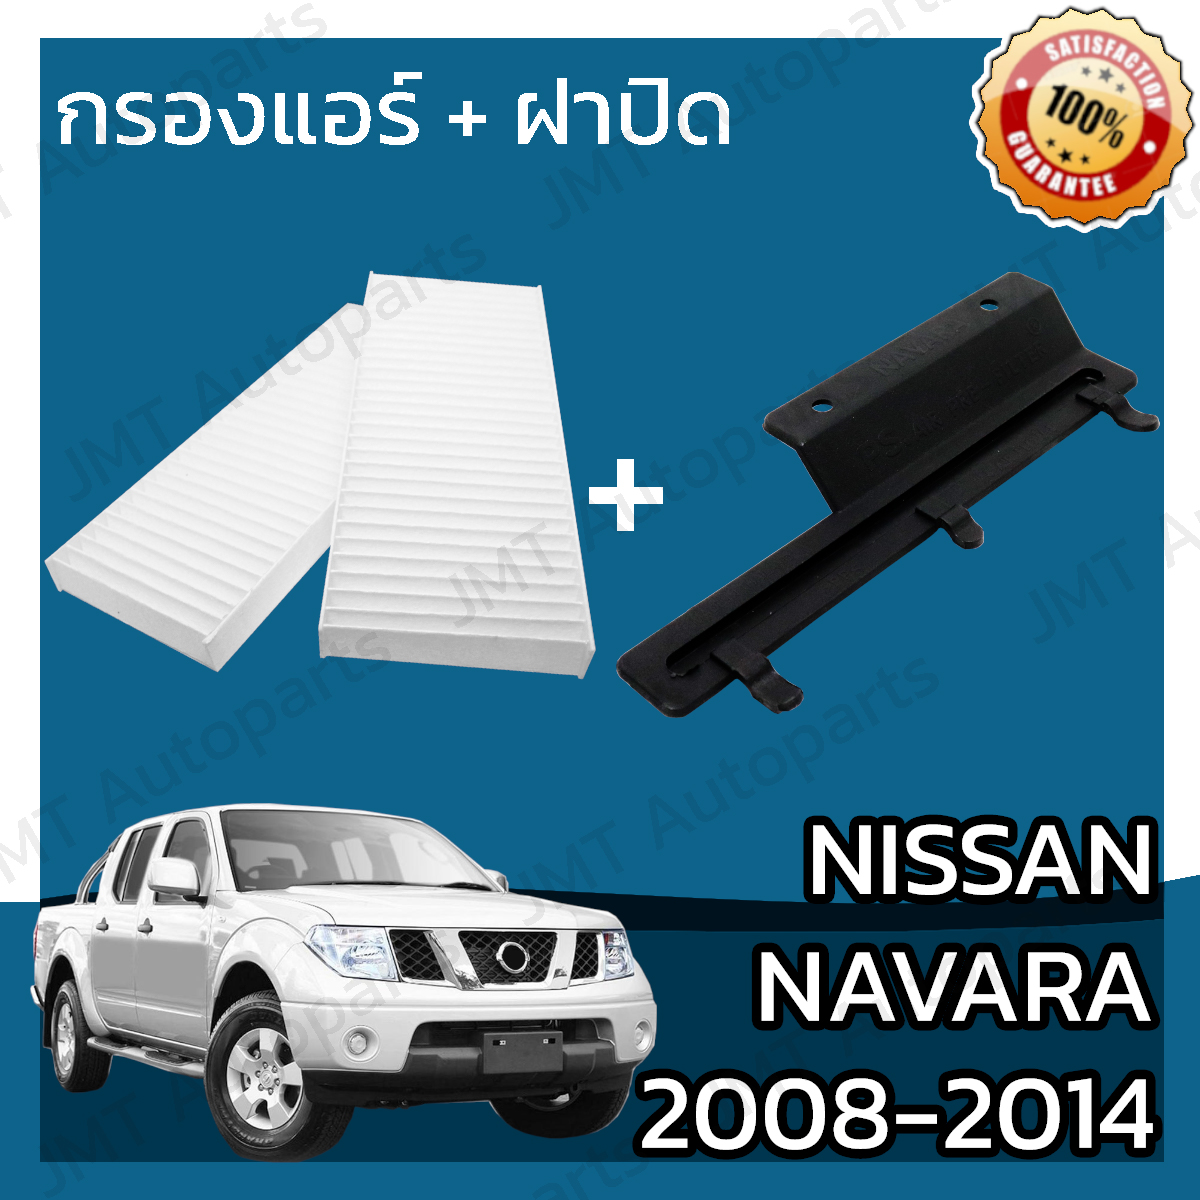 กรองแอร์ + ฝาครอบ นิสสัน นาวาร่า ปี 2008-2014 Nissan Navara A/C Car Filter + Cover นาวารา